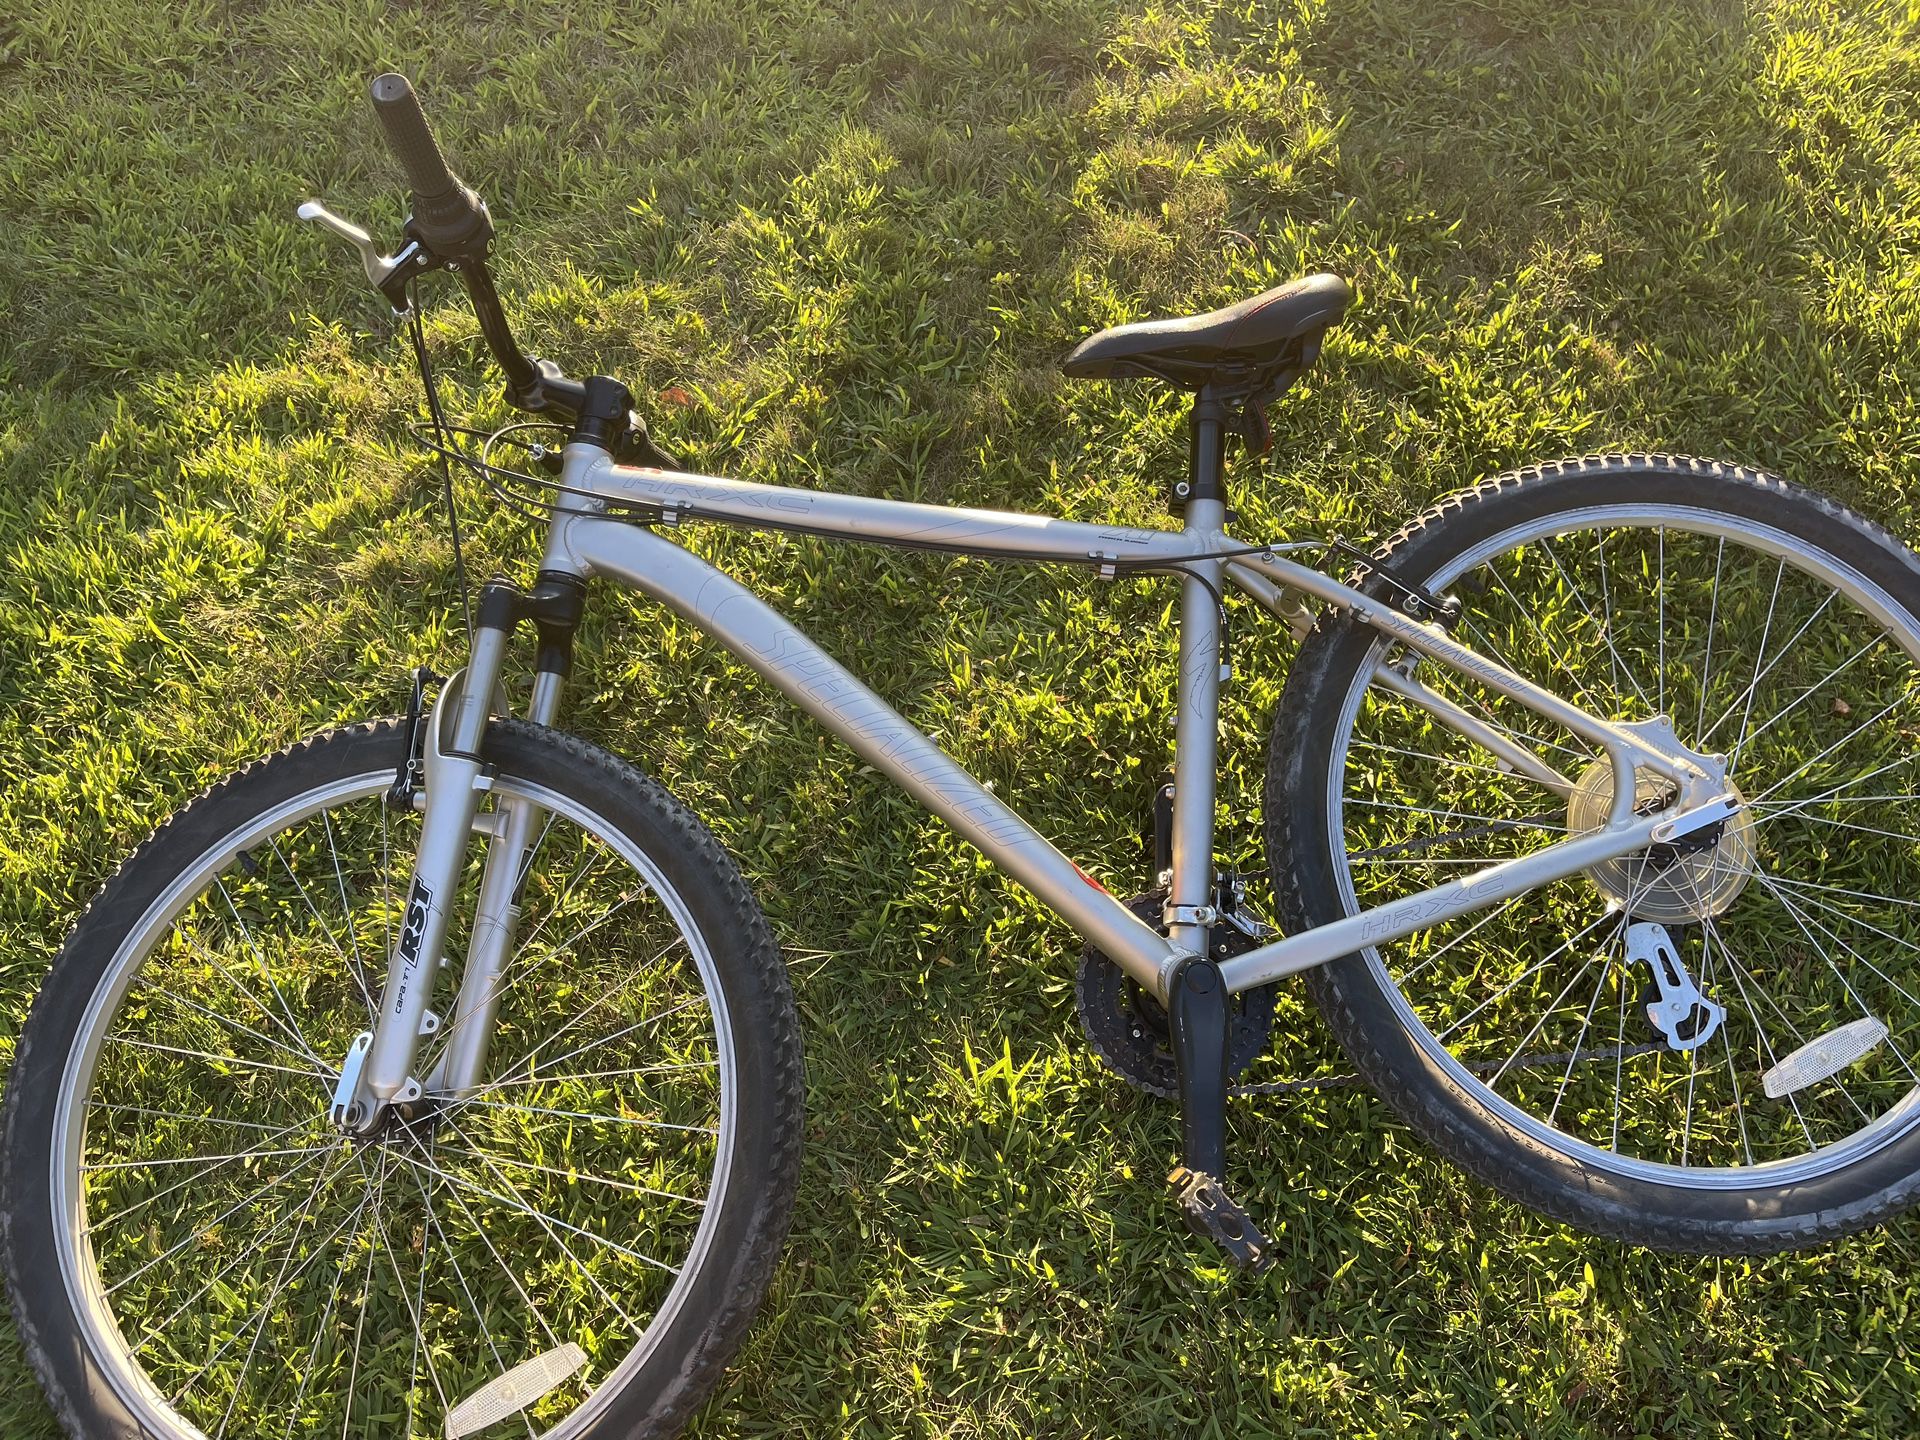 Used Specialized HRXC 17” Mountain Bike